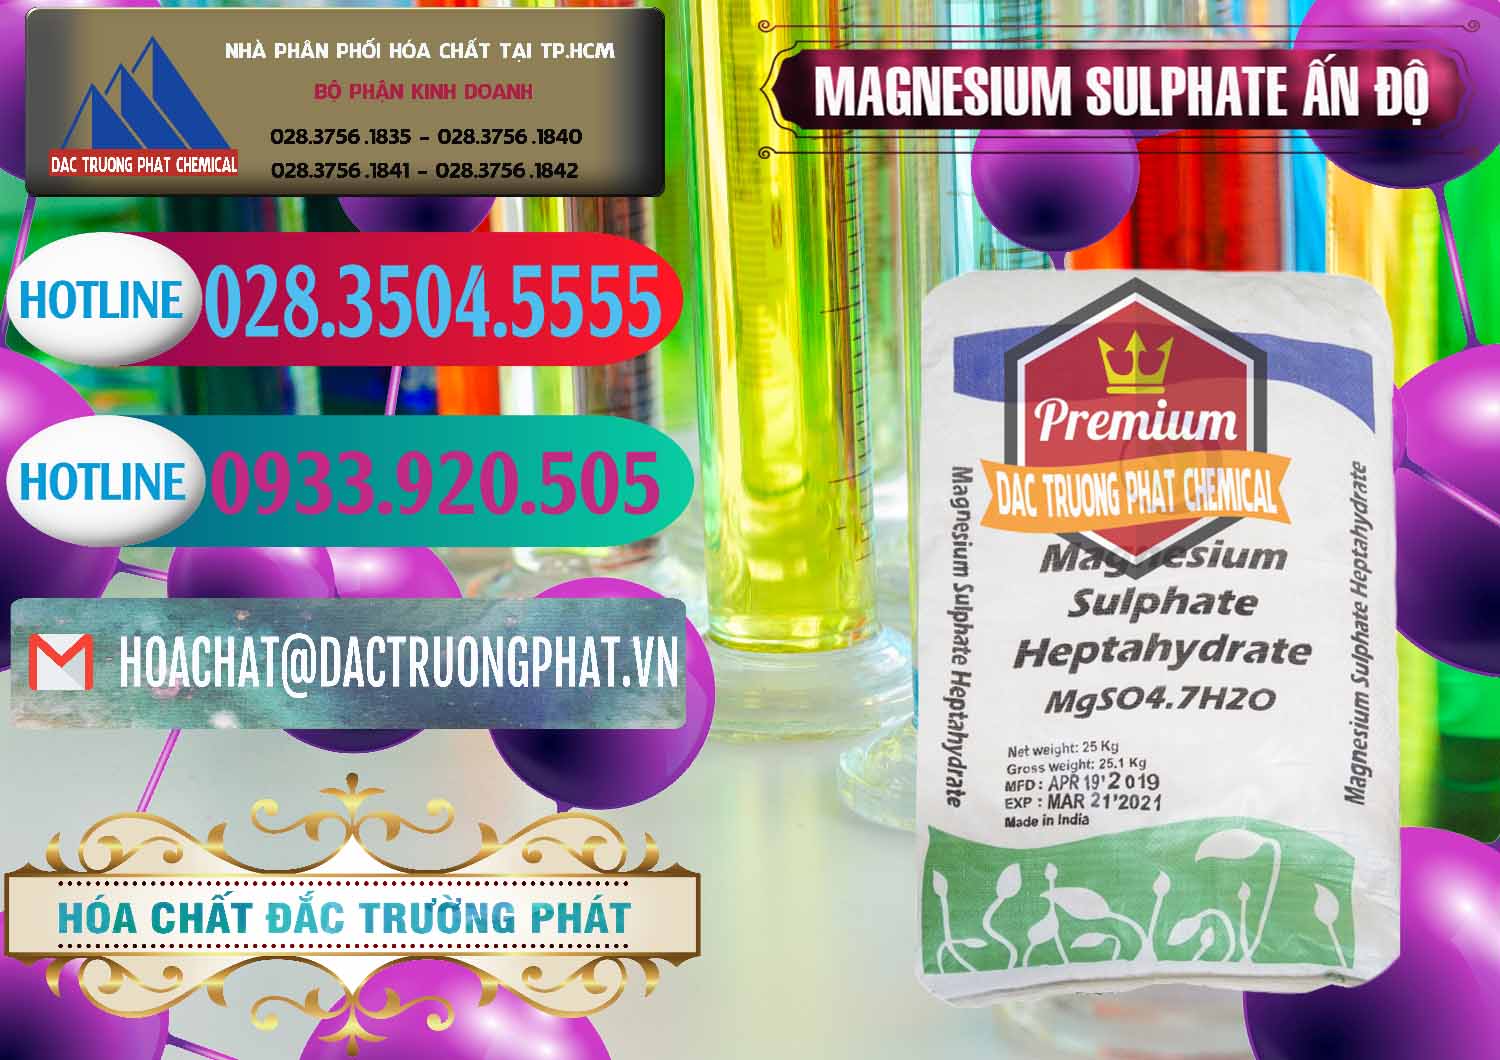 Nơi chuyên kinh doanh - bán MGSO4.7H2O – Magnesium Sulphate Heptahydrate Ấn Độ India - 0362 - Cung ứng & phân phối hóa chất tại TP.HCM - truongphat.vn